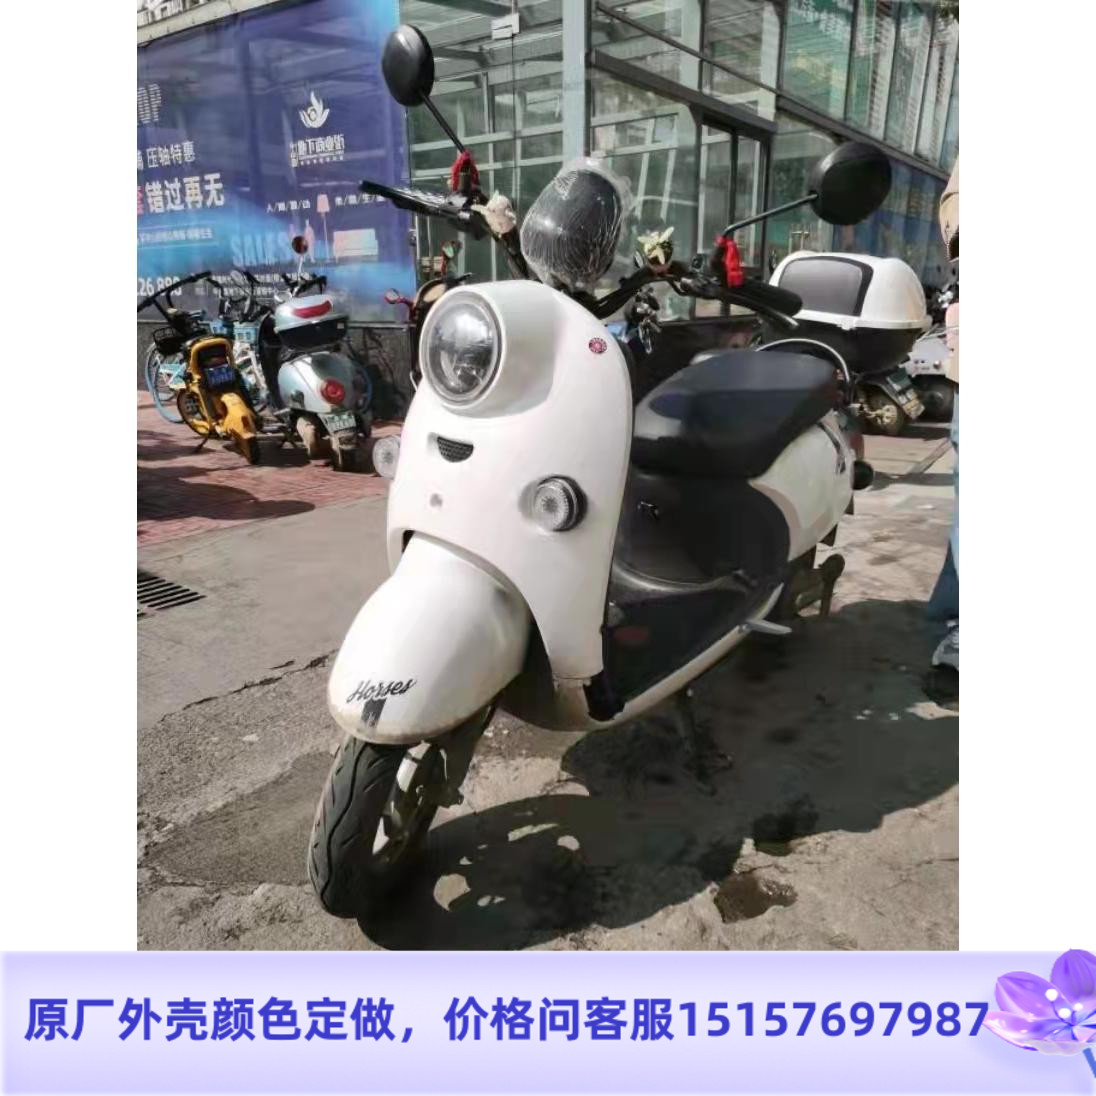 立马米迪电动车电摩托车全套塑料件外壳灯具前卫大灯边条脚踏板